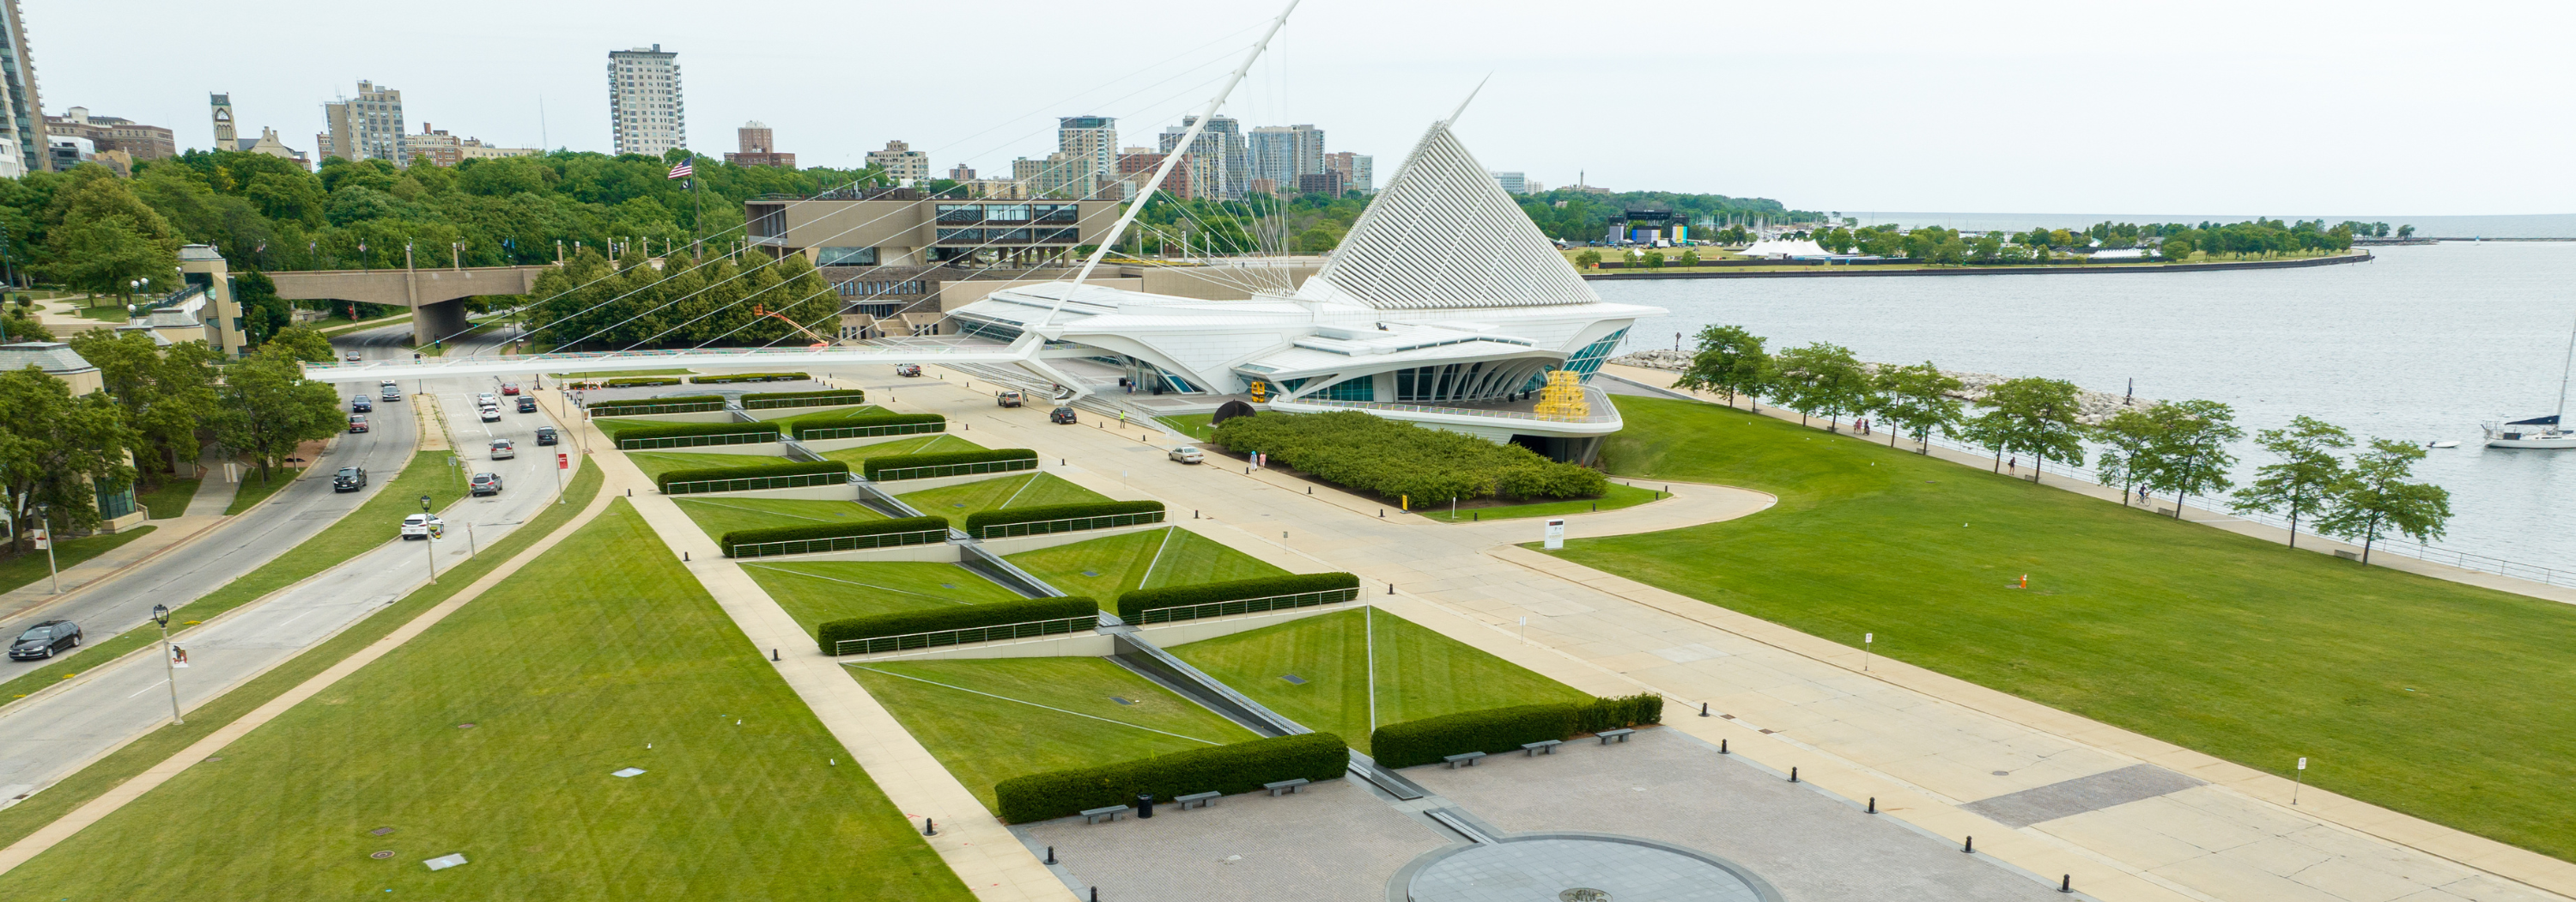 Milwaukee Art Museum Cudahy Gardens